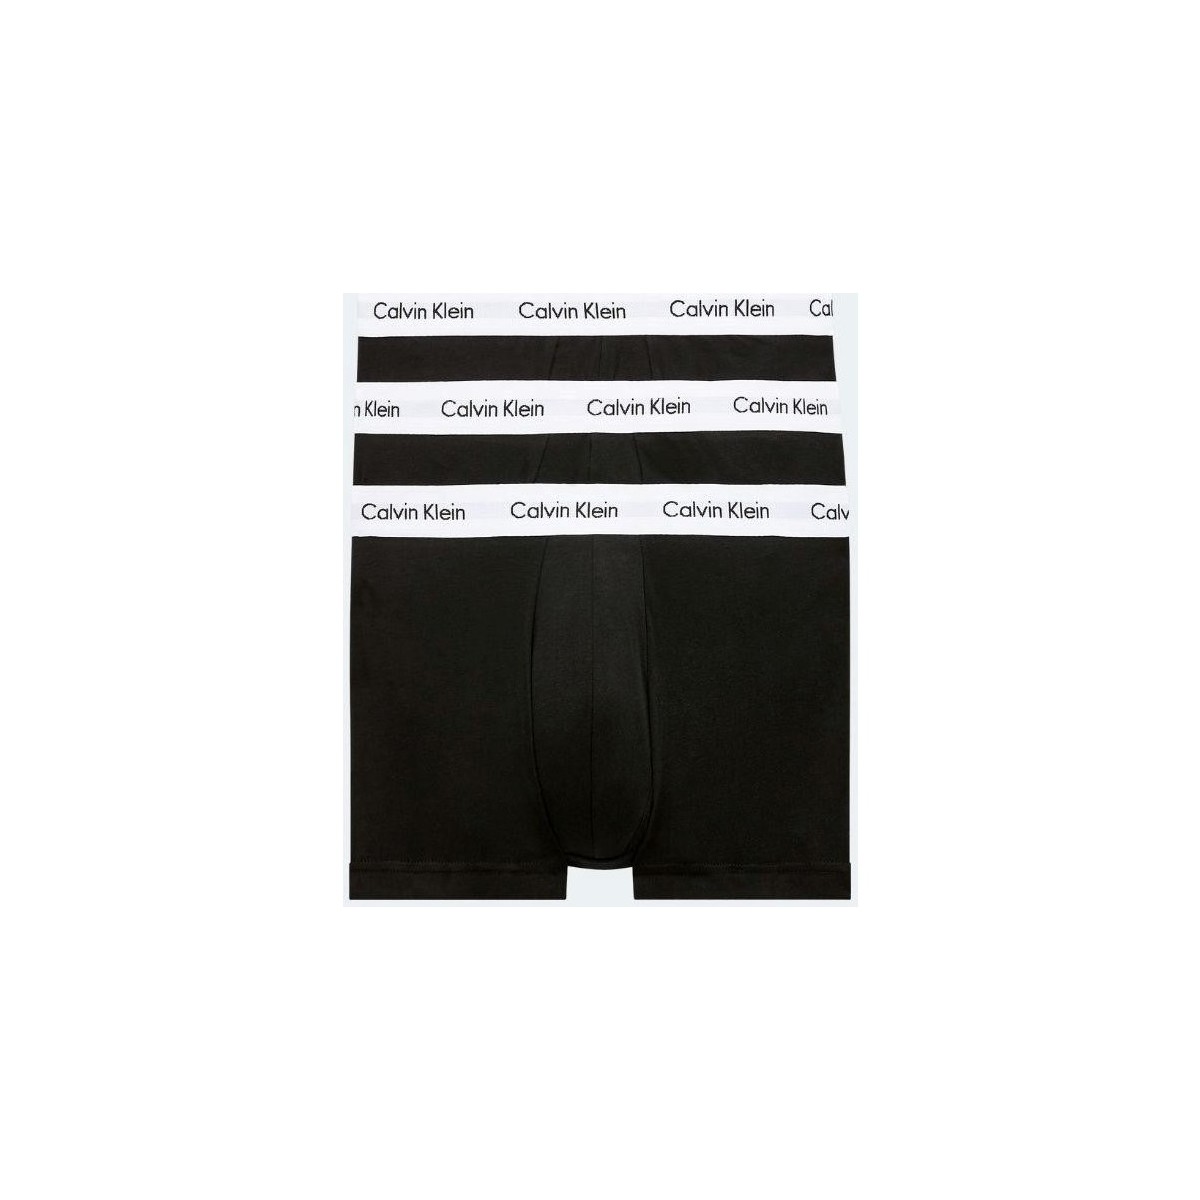 Spodní prádlo Muži Trenýrky Calvin Klein Jeans 0000U2664G 3P LR TRUNK Černá